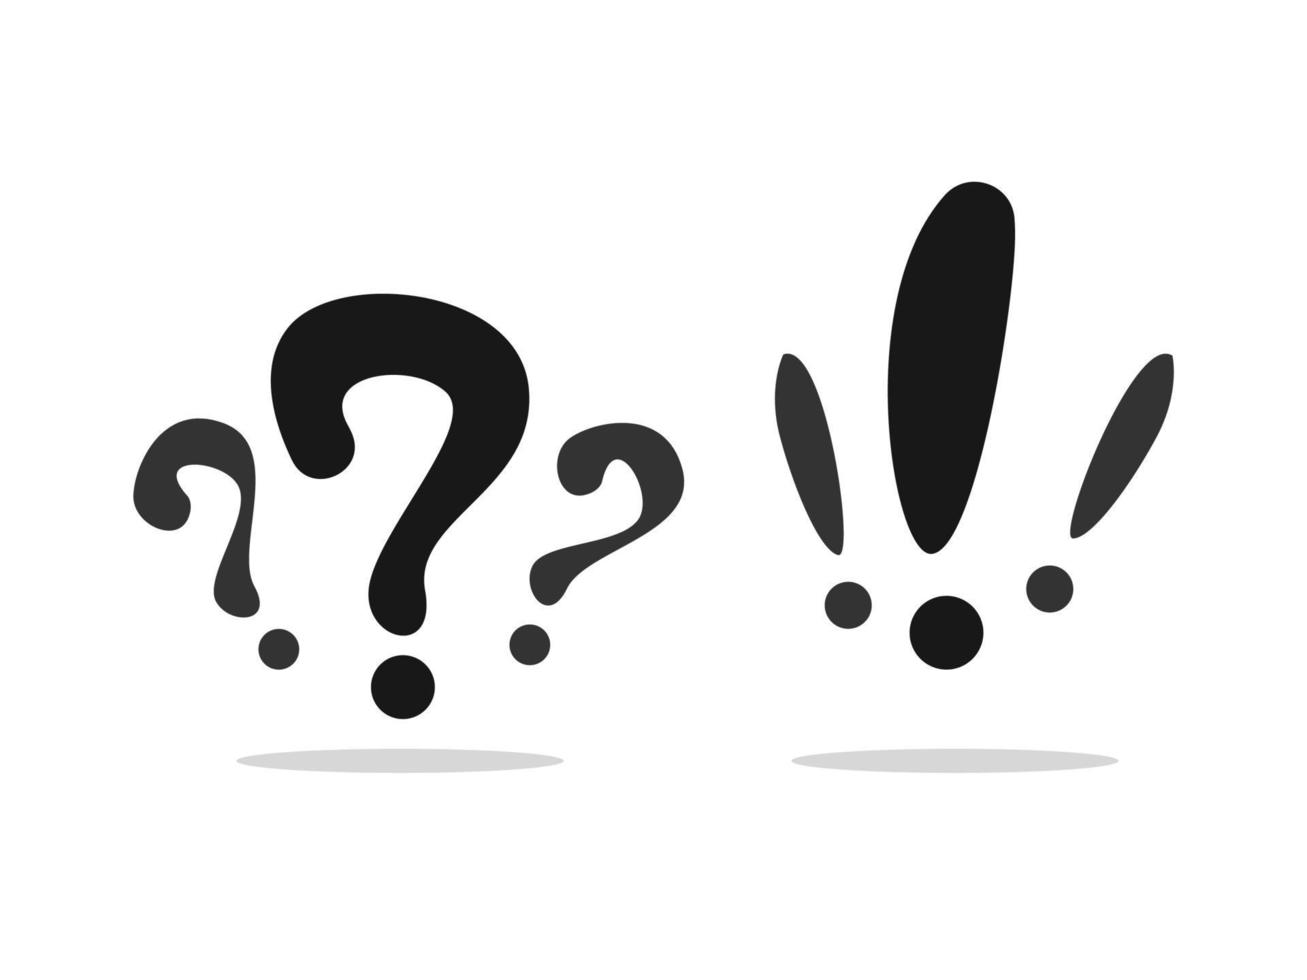 símbolo de signo de interrogación, icono de pregunta vector